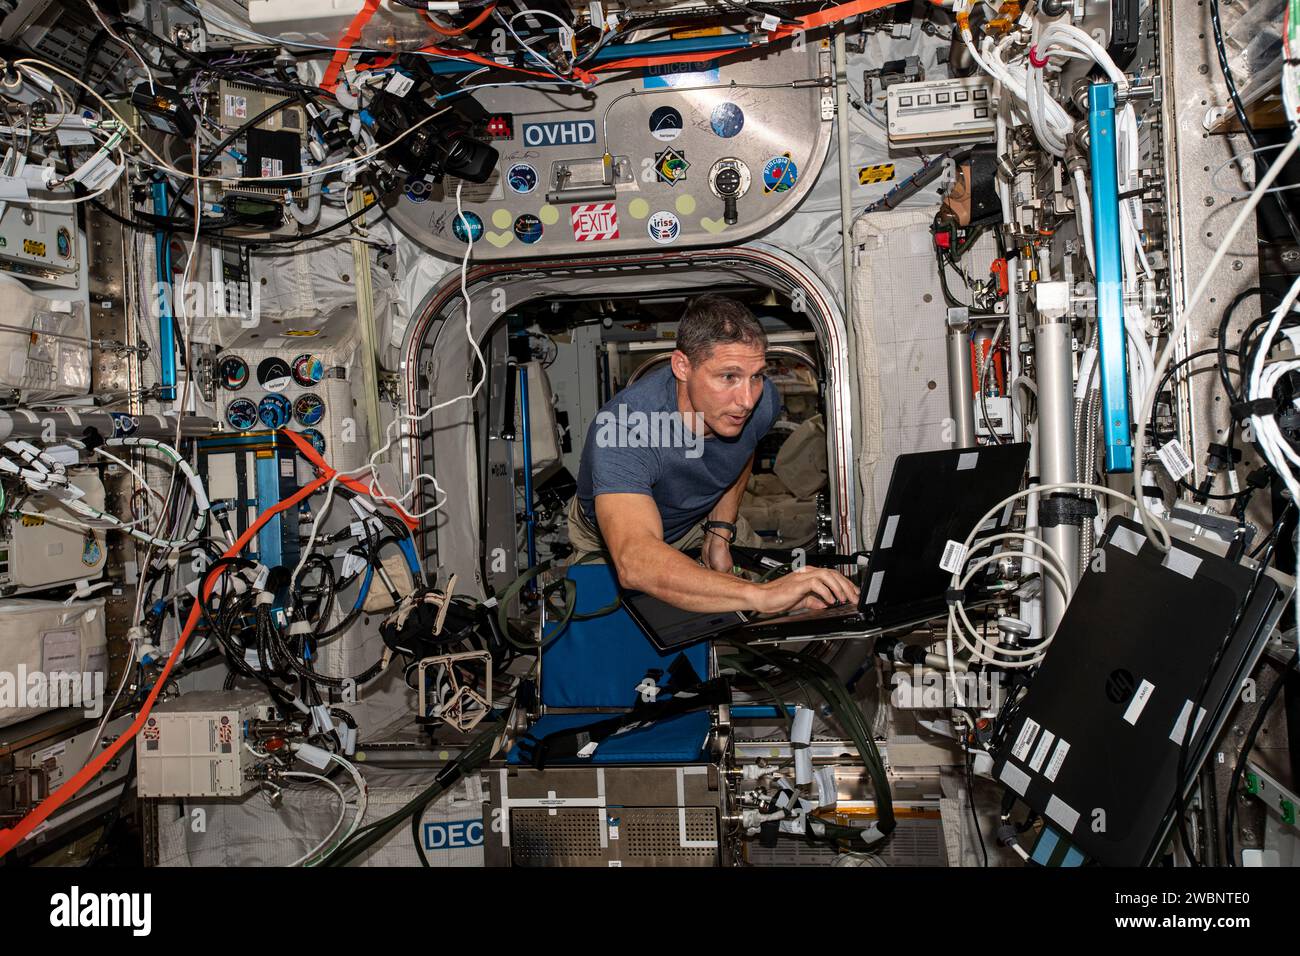 Iss064e005564 (24 novembre 2020) --- astronauta NASA e ingegnere di volo Expedition 64 Michael Hopkins lavora all'interno del modulo del laboratorio Columbus per l'esperimento Grasp che esplora come il sistema nervoso centrale, in particolare la coordinazione occhio-mano, si adatta all'assenza di peso. Foto Stock